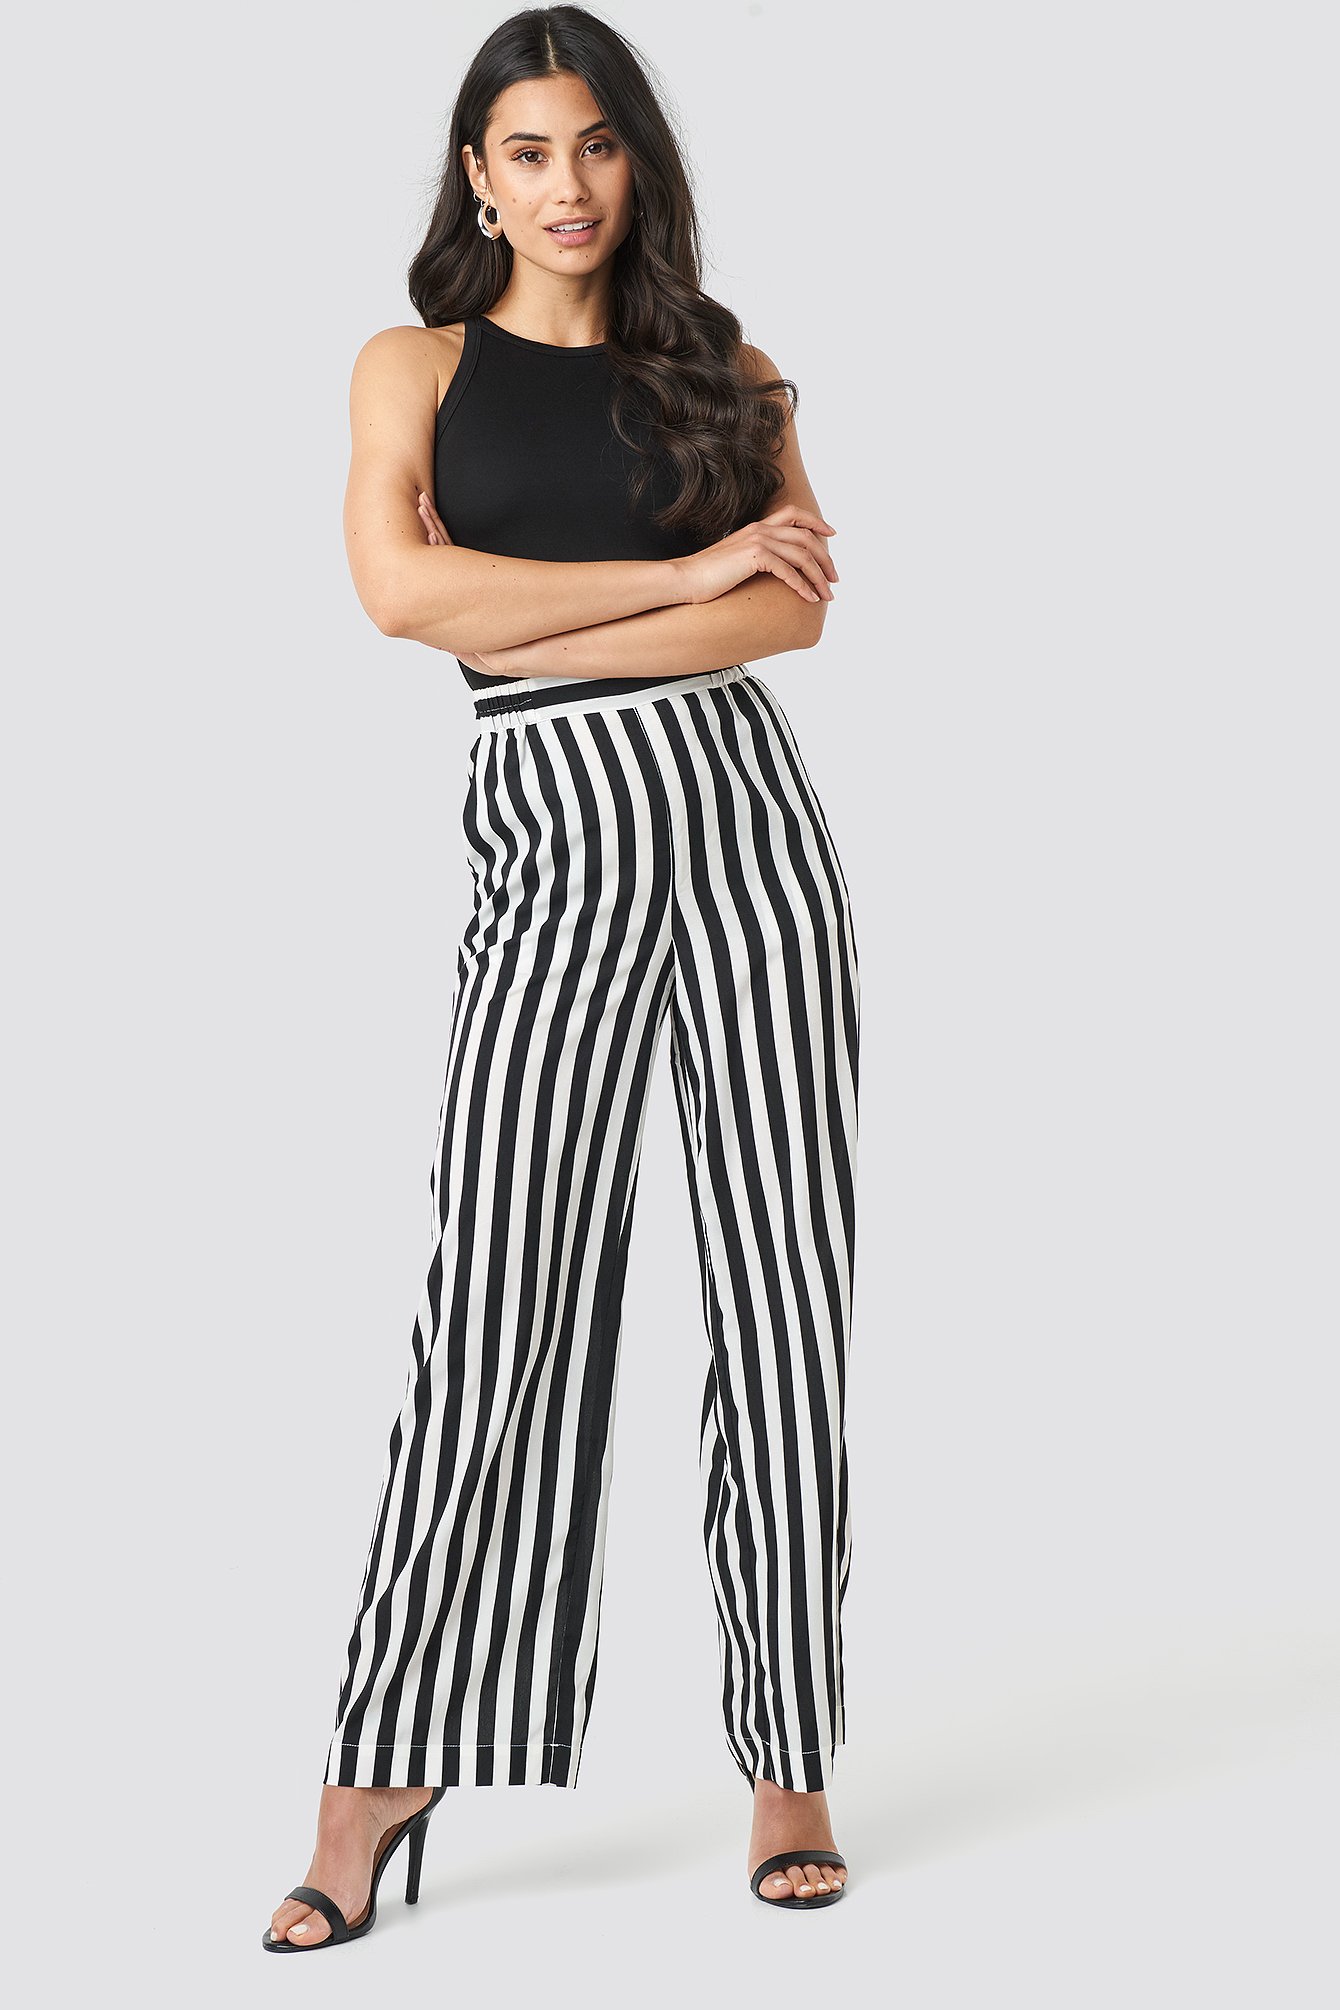 Black/White Wide Striped Pants